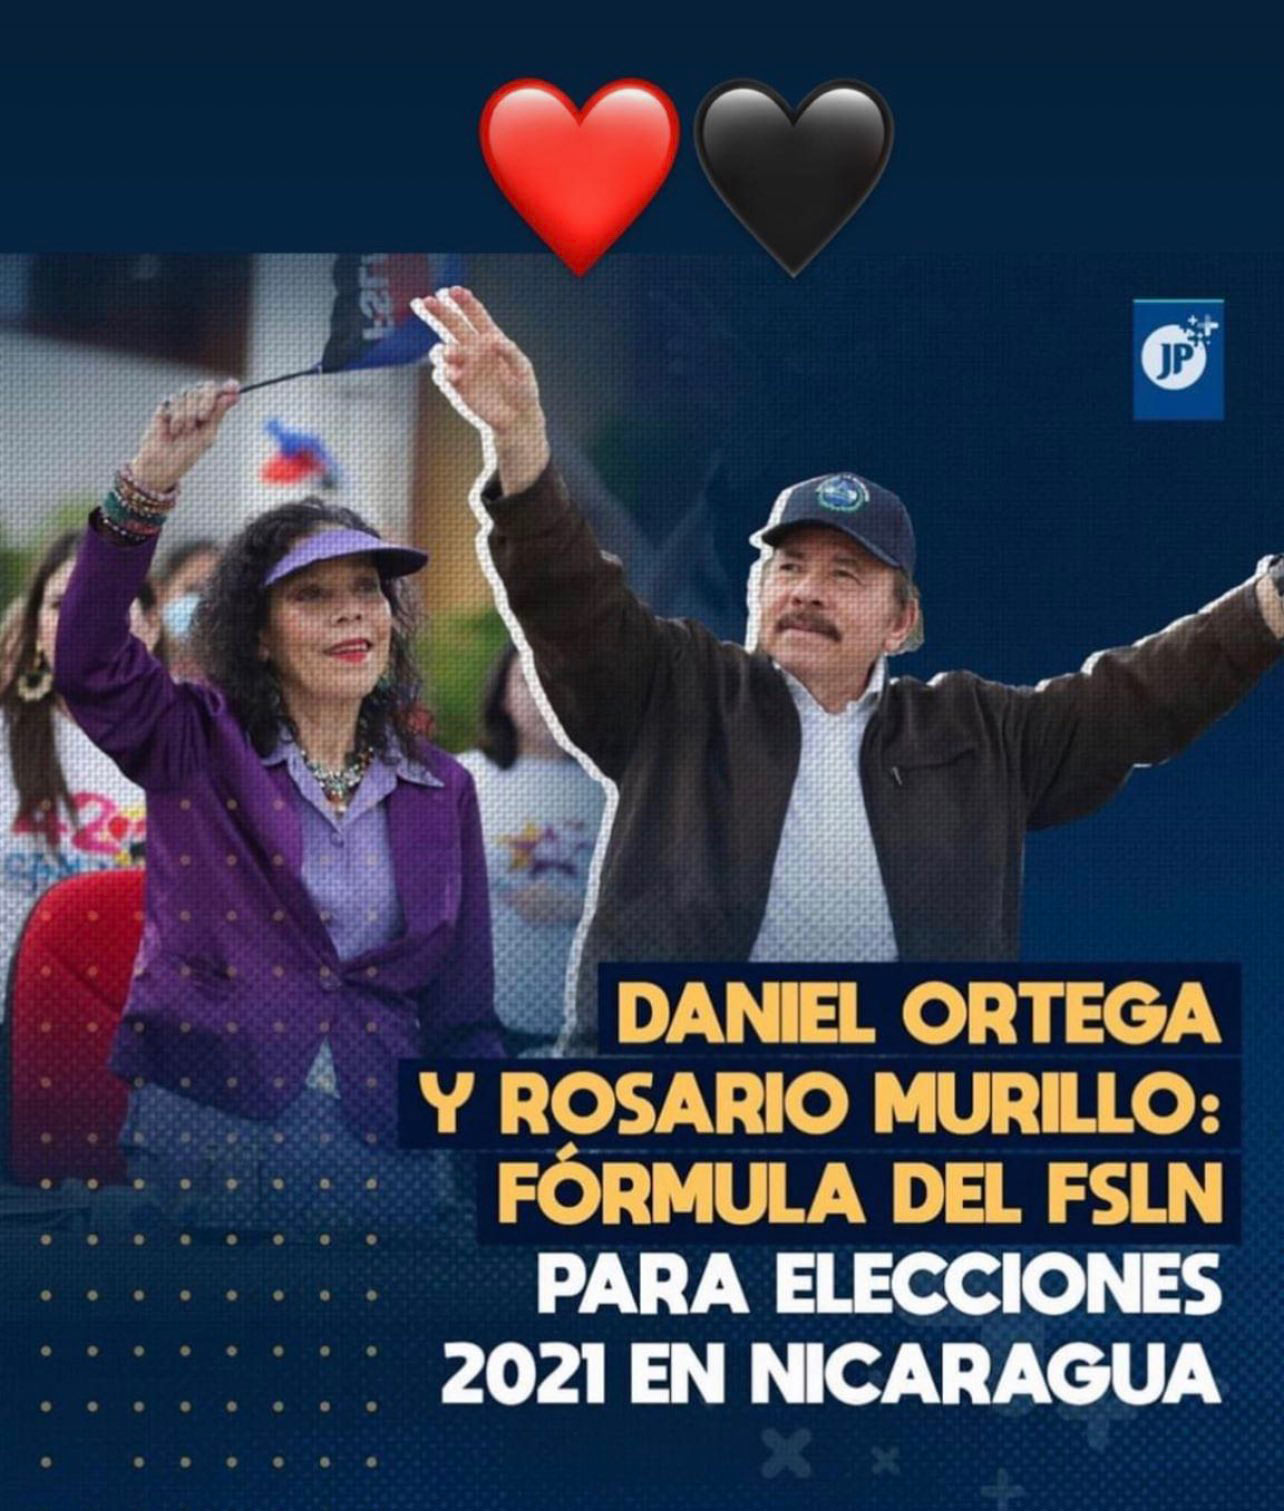 investigations/Ortega-Murillo-Campaign-Poster.jpg